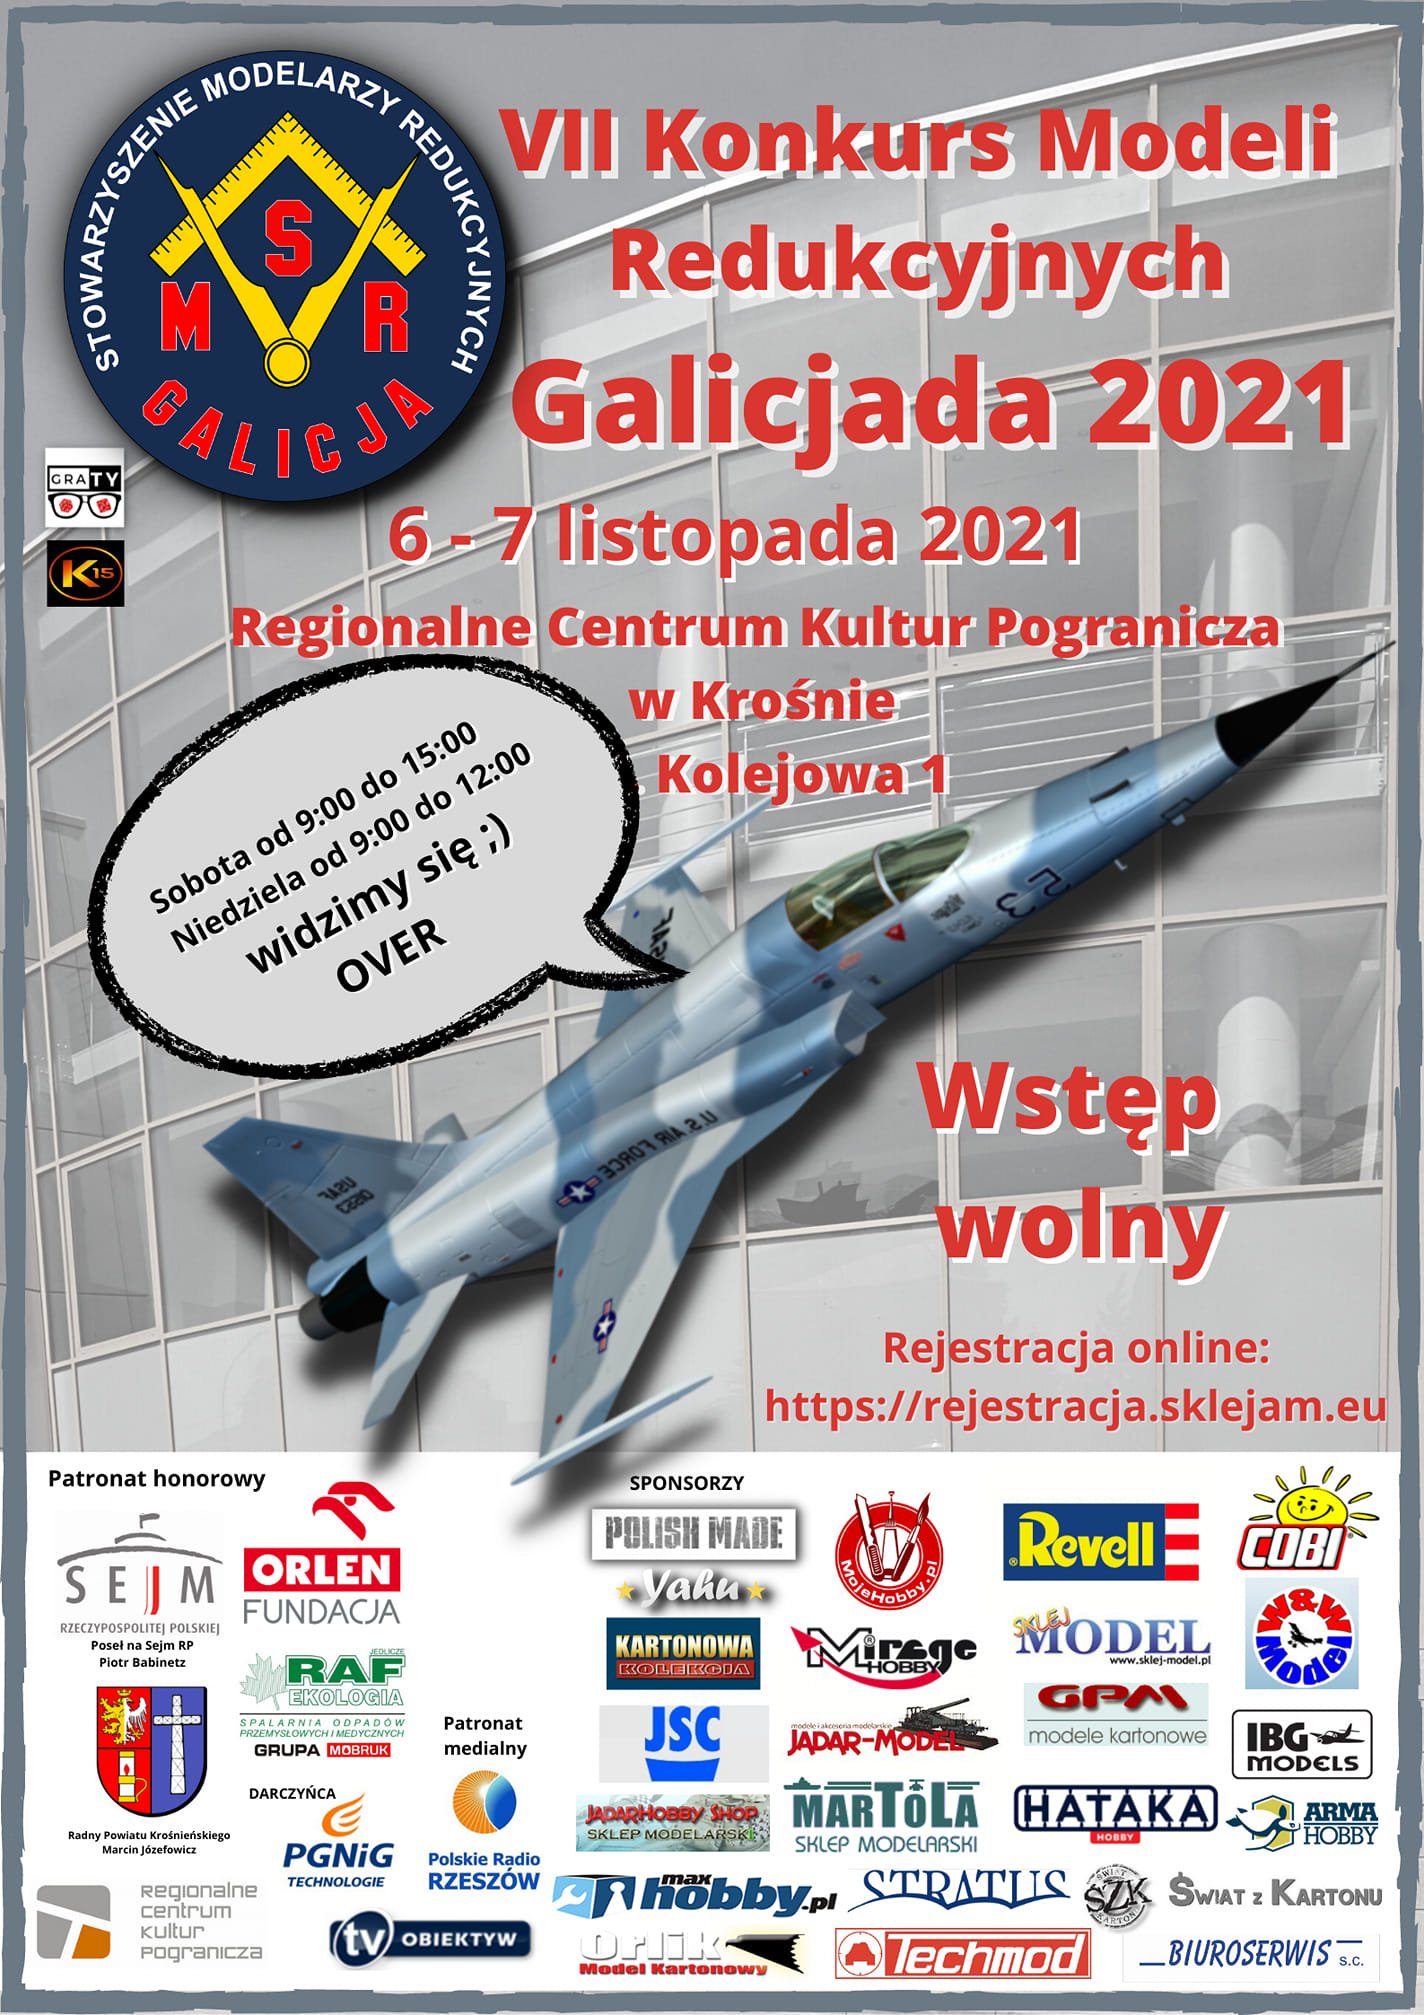 RAPORT: VII Konkurs Modeli Redukcyjnych "Galicjada 2021" 6-7 listopad